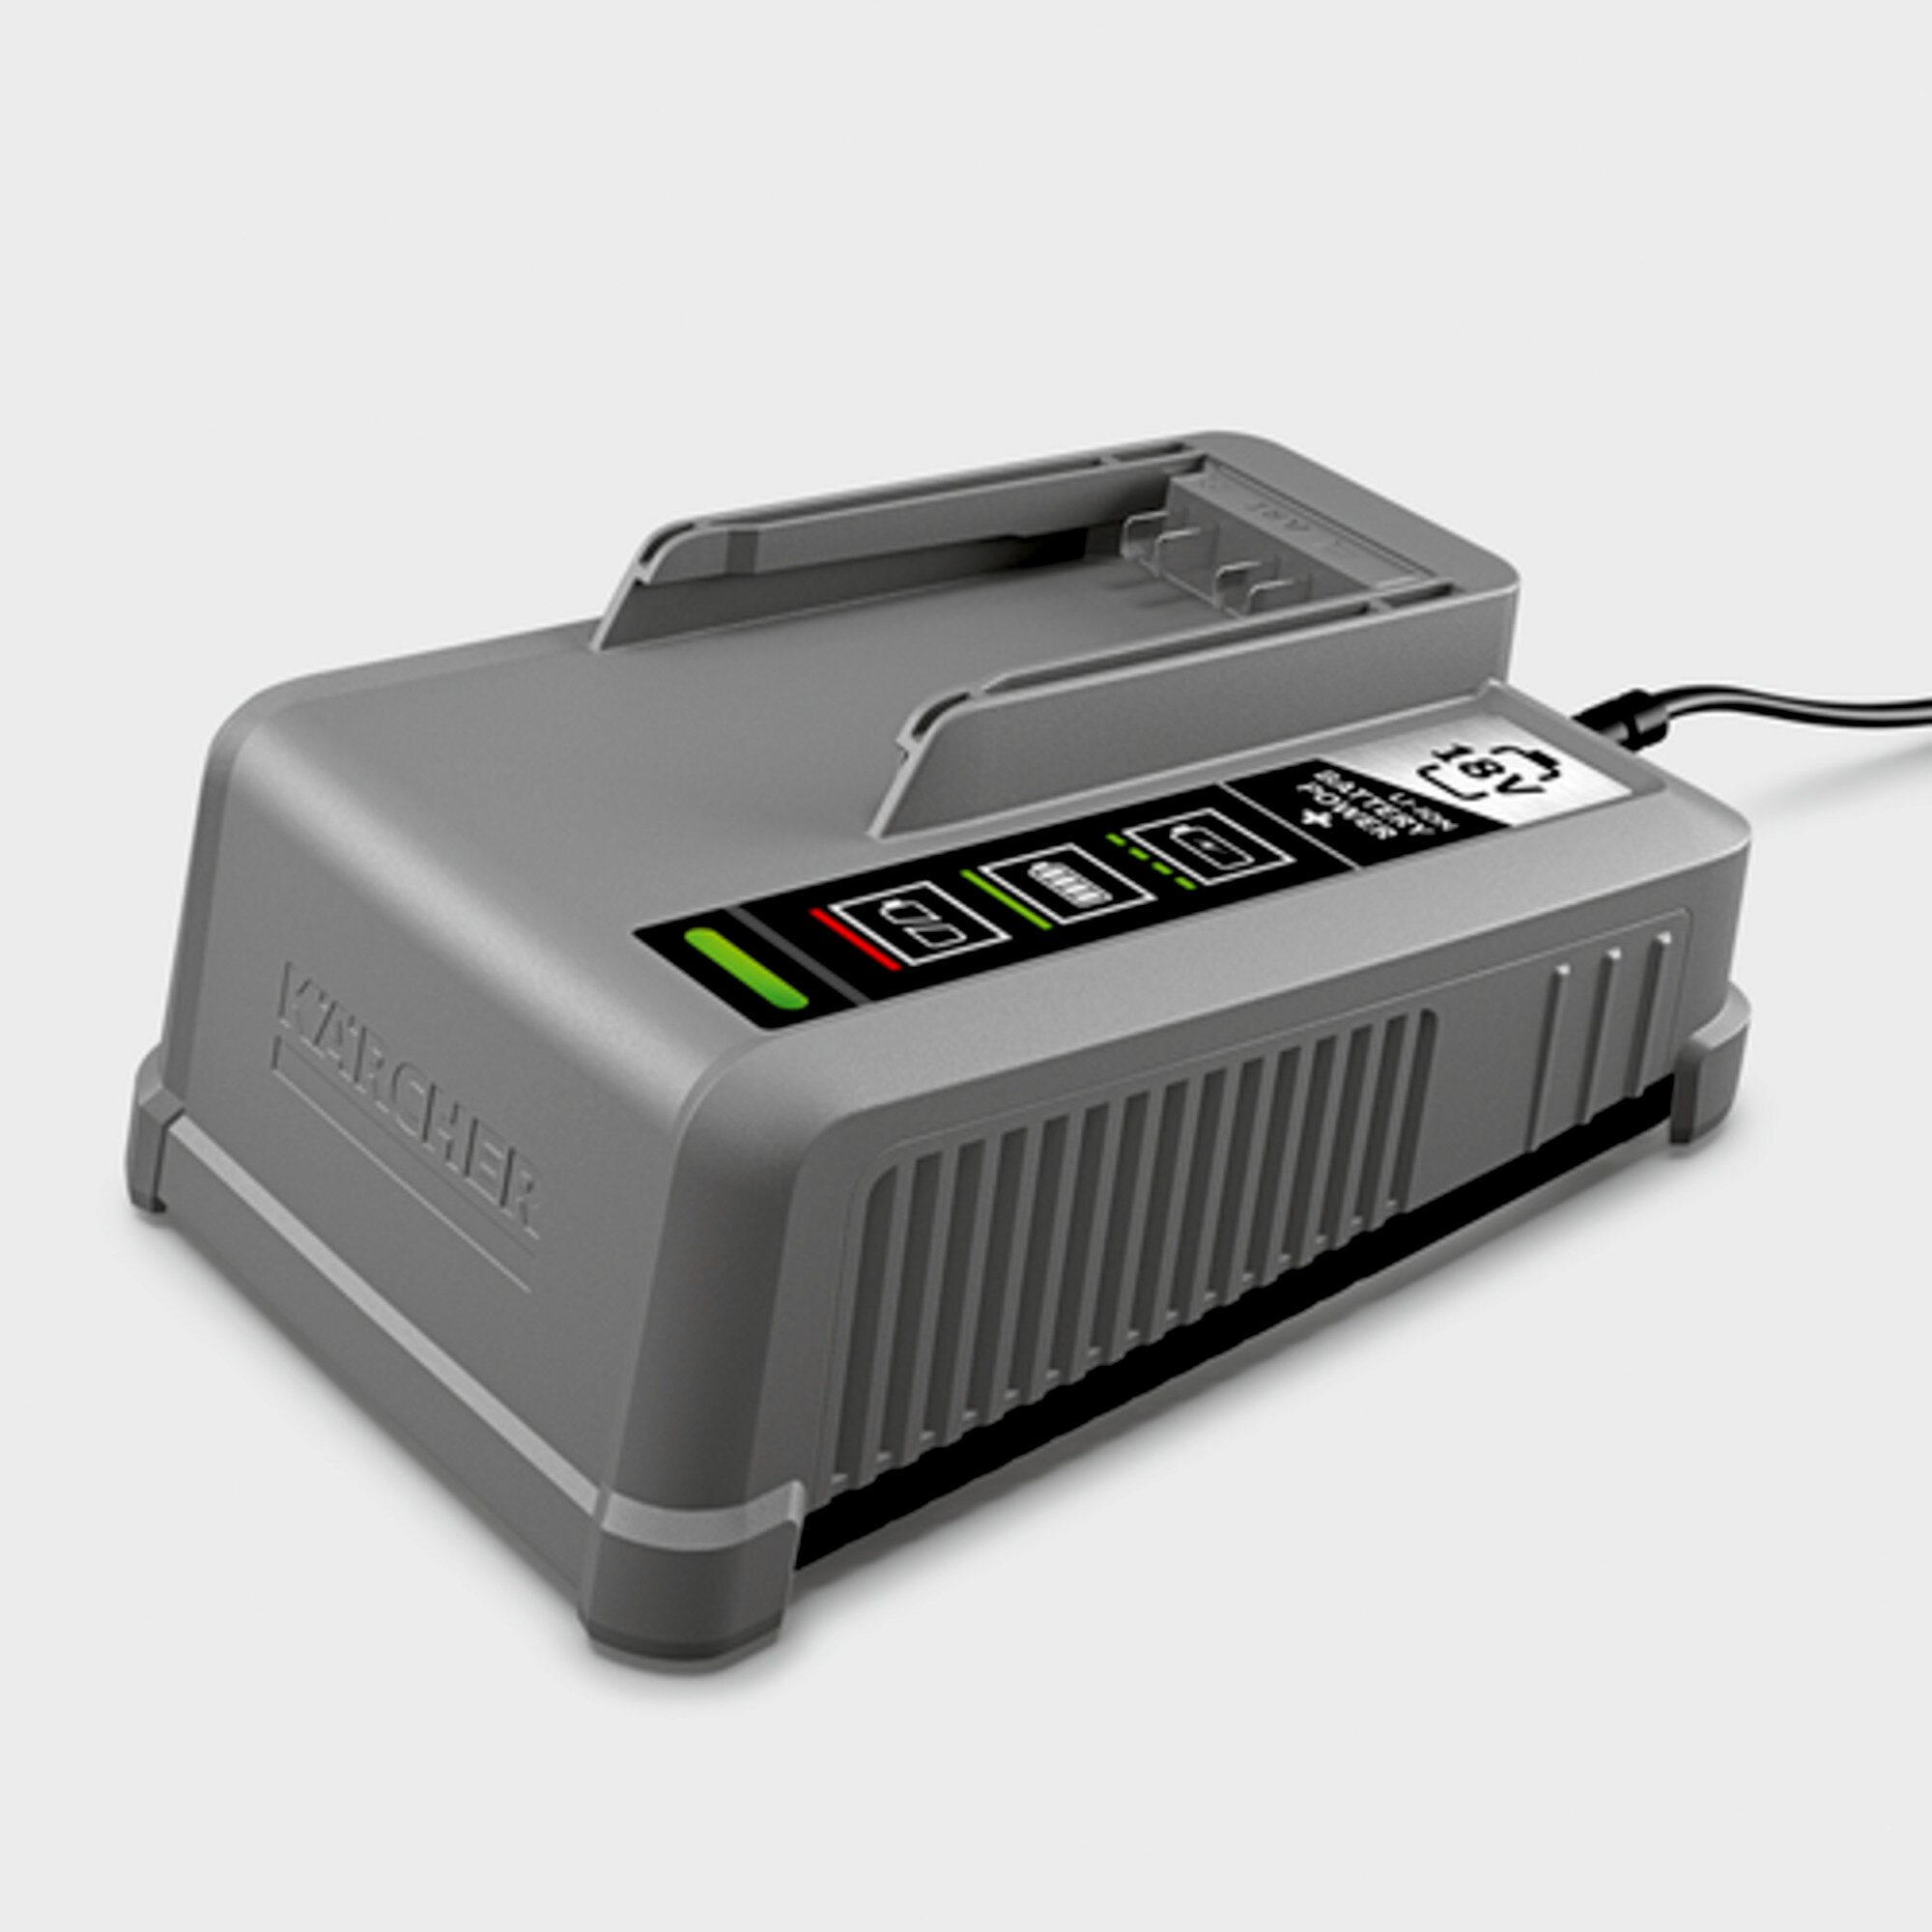 Kärcher Chargeur rapide batteries Power 18 V (80…